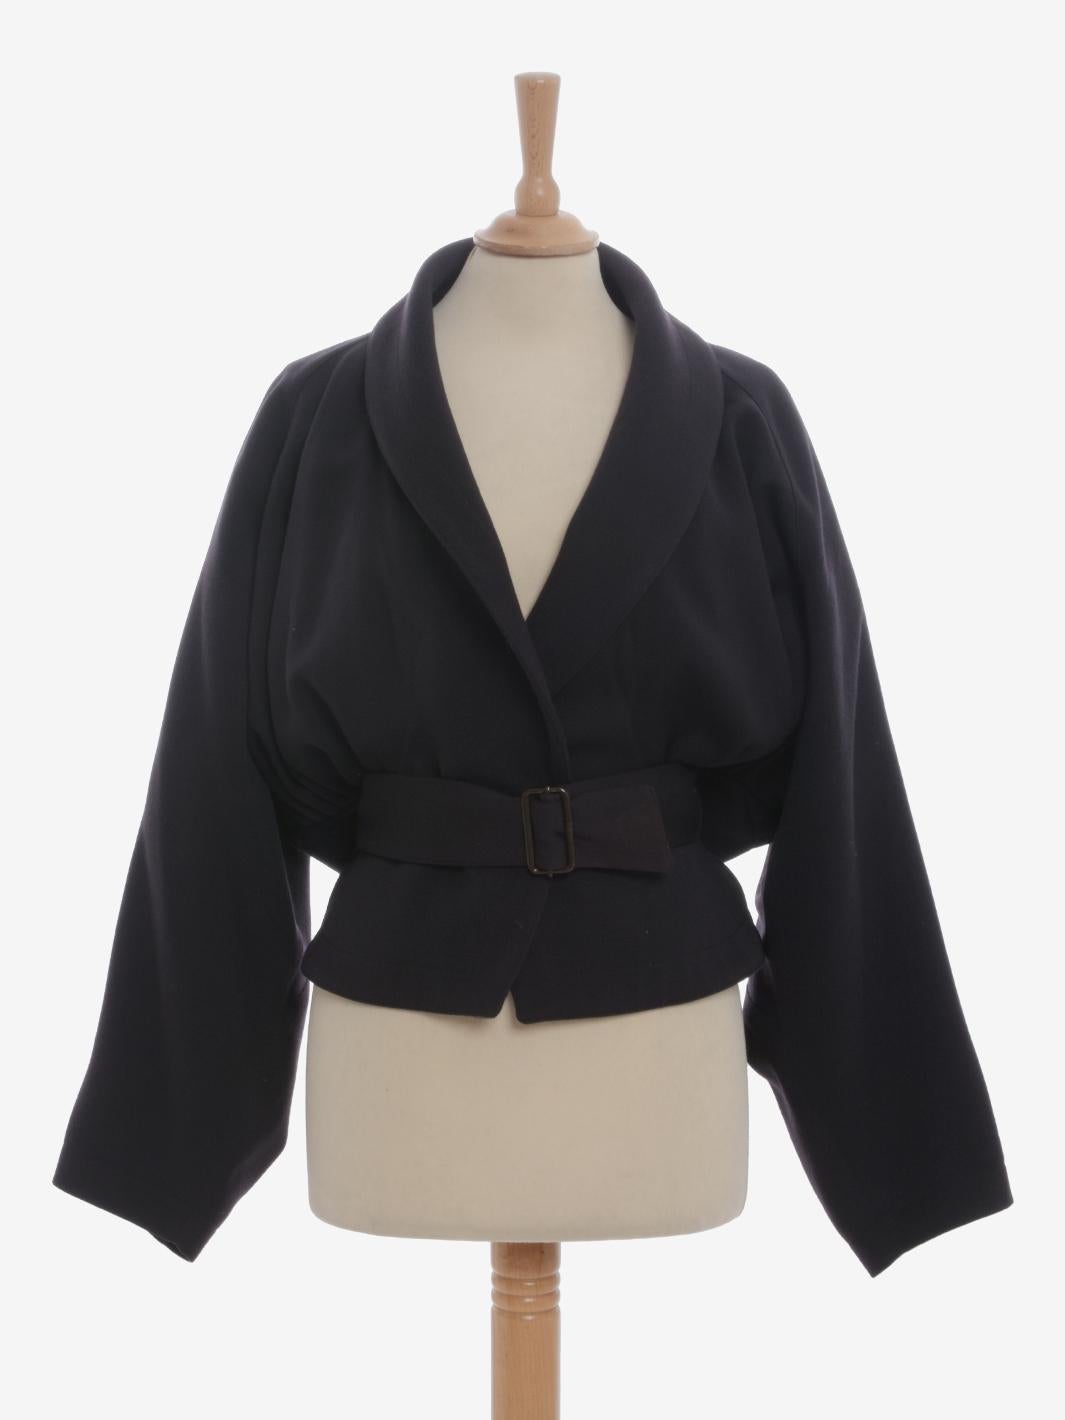 Die Alaïa Wool Belted Jacket ist ein seltener Blazer von Azzedine Alaïa aus der zweiten Hälfte der 1980er Jahre mit einem Schalkragen und leichten Fledermausärmeln. Der überkreuzte Bund ist verstellbar, und die Seiten sind mit mehreren Pence